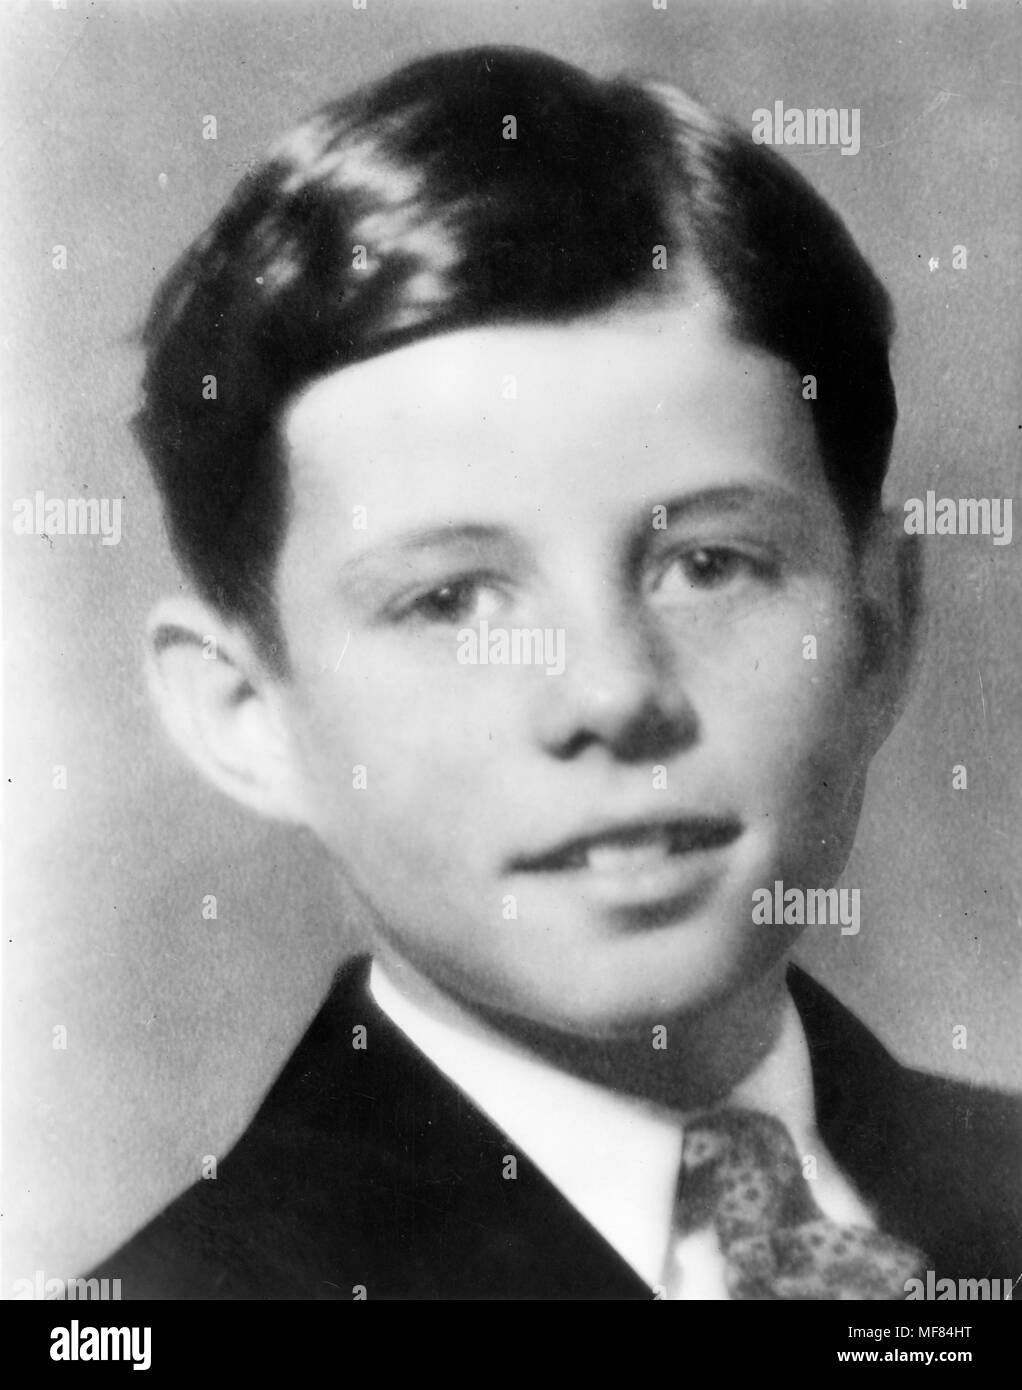 PC 6 C. 1926/1927 Portrait von John F. Kennedy. Präsident John F. Kennedy als Junge. Bitte Quelle: John F. Kennedy Presidential Library und Museum, Boston. Stockfoto